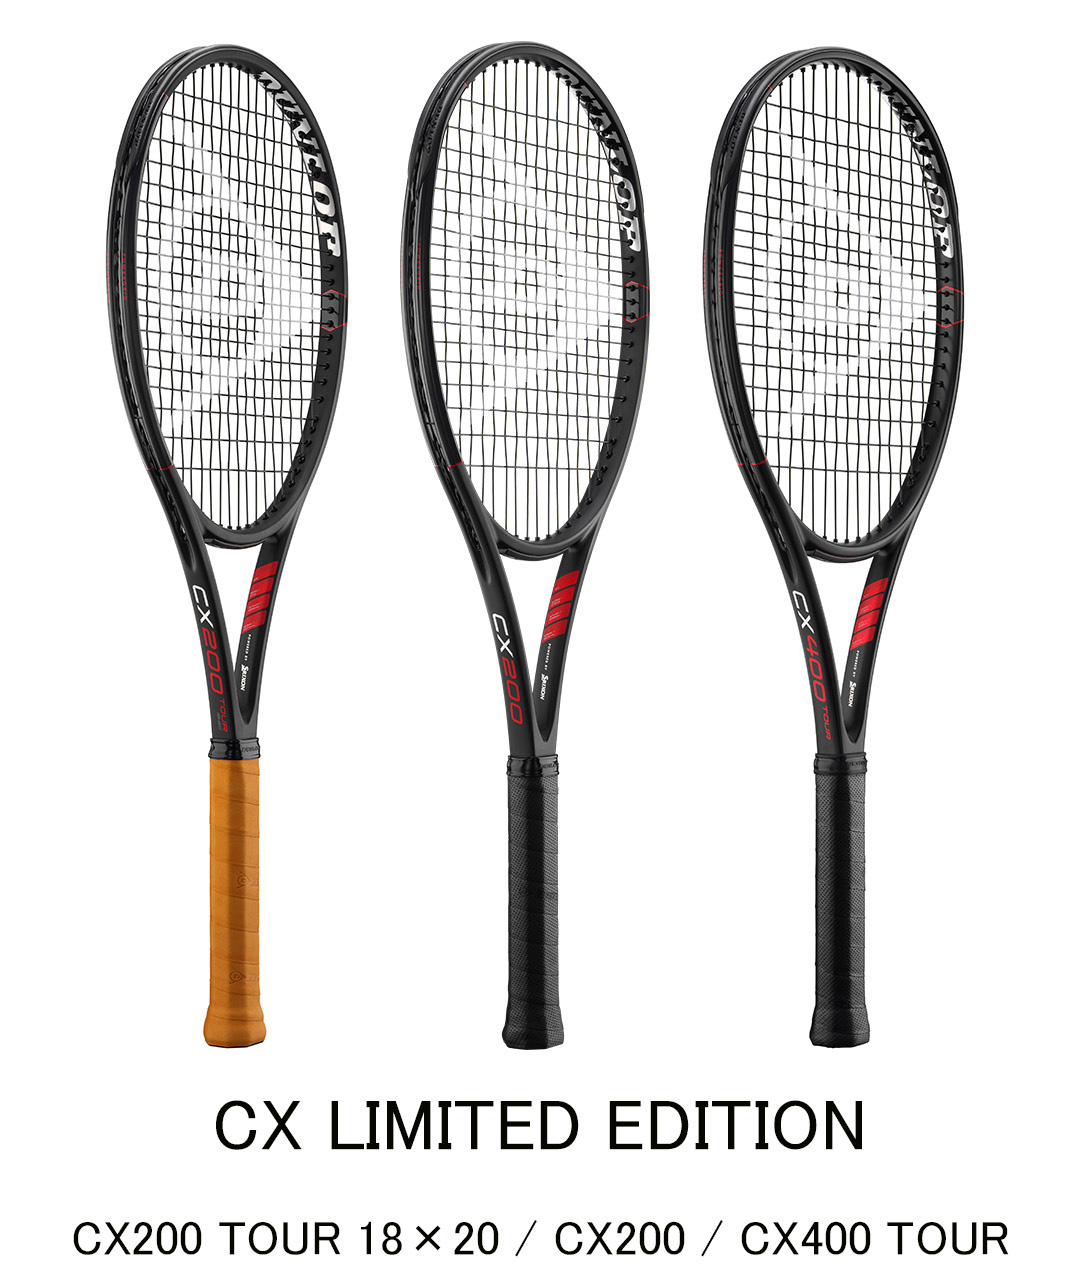 ダンロップテニスラケット「CX LIMITED EDITION」を数量限定で新発売 ～人気のボックス形状「CX」シリーズから精悍なブラックのモデルが3機種登場～  | 住友ゴム工業